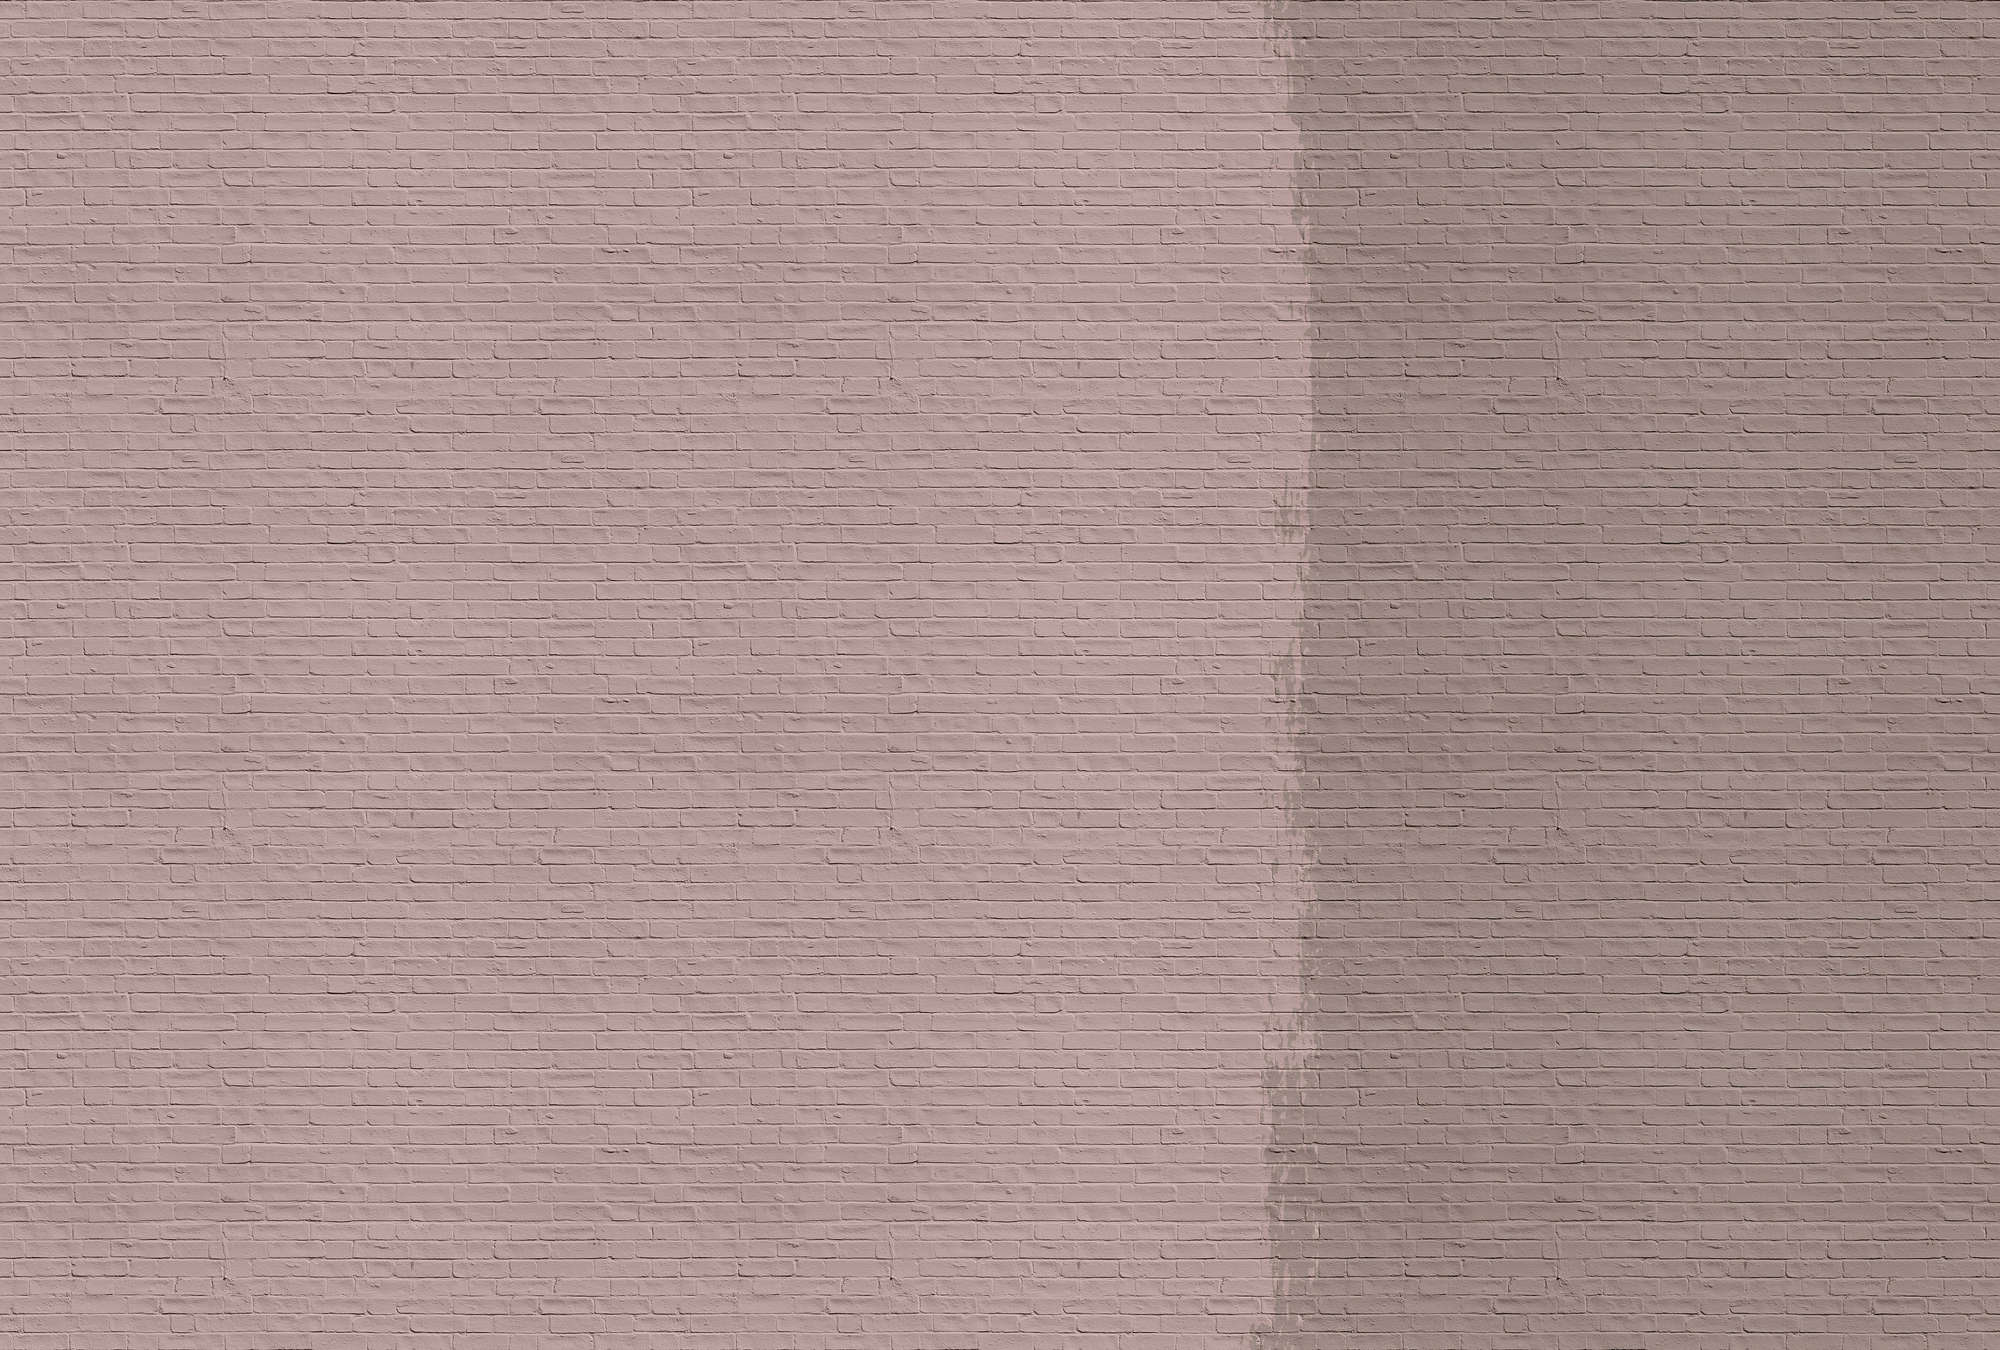             Tainted love 2 - Papier peint avec mur de briques peintes - rose, taupe | Intissé lisse mat
        